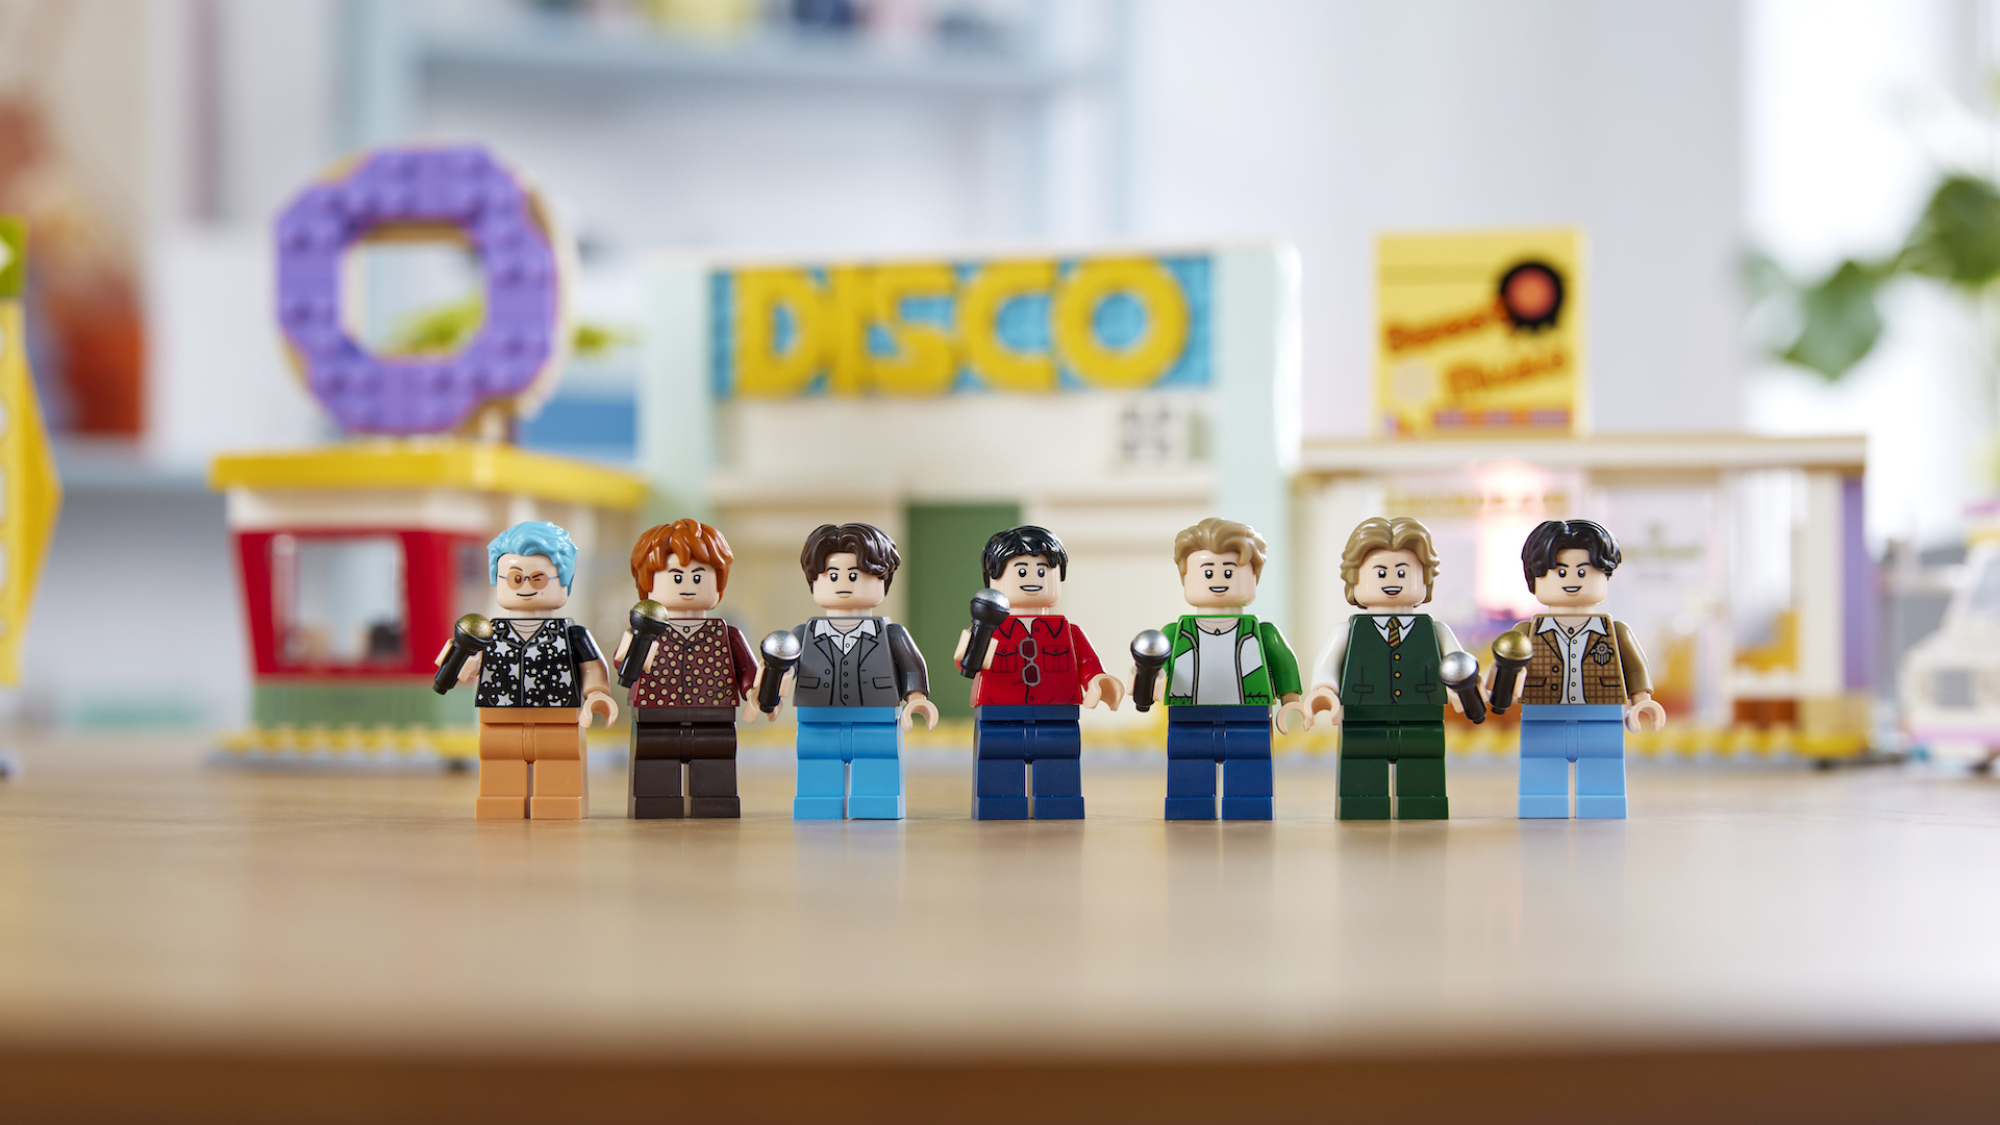 Les membres du BTS en figurines Lego.